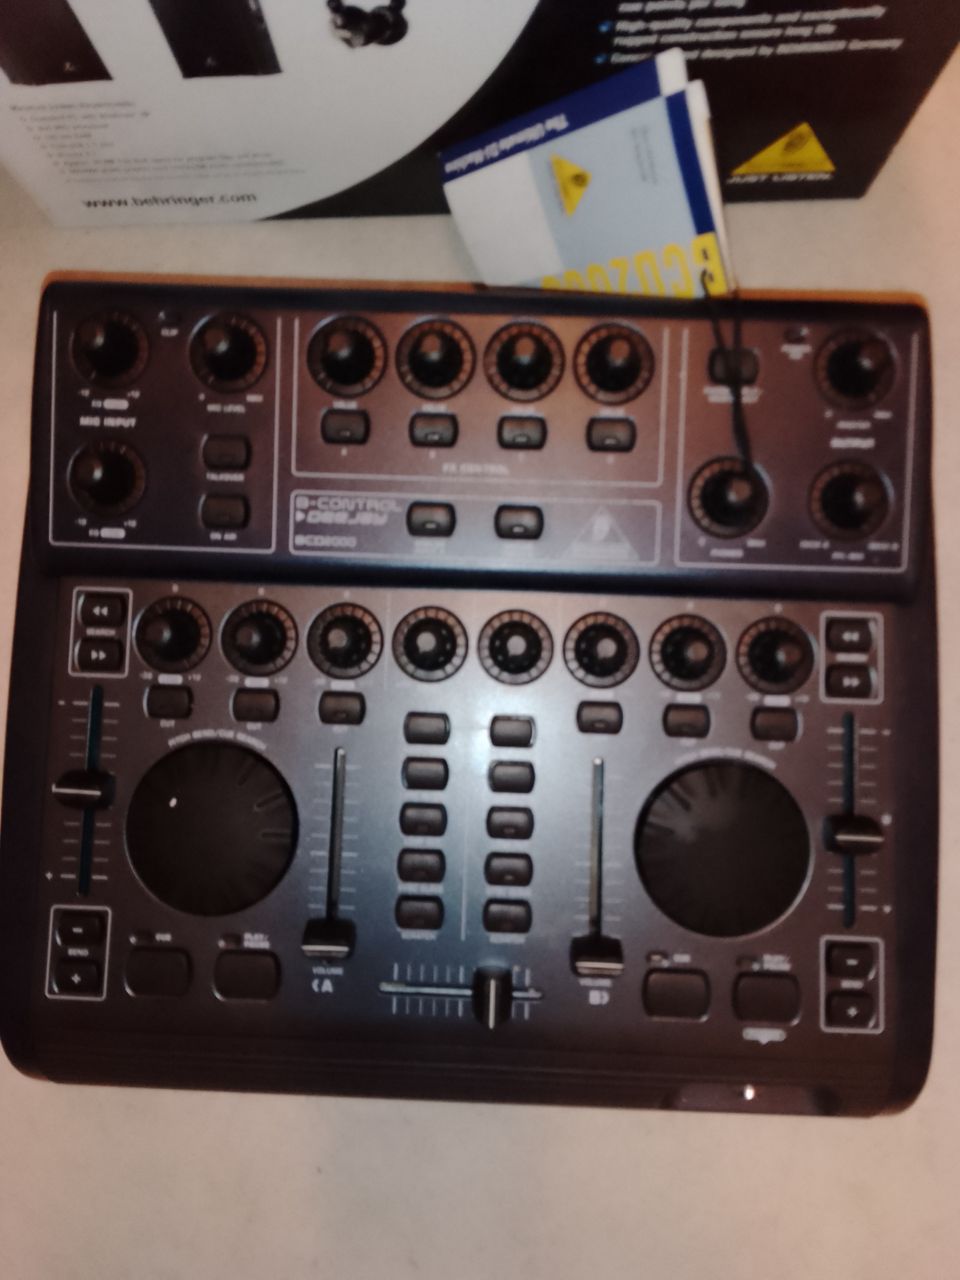 DJ-mikseri BCD-2000 pod cast. USB-liitäntä tietokoneeseen kytkettävä